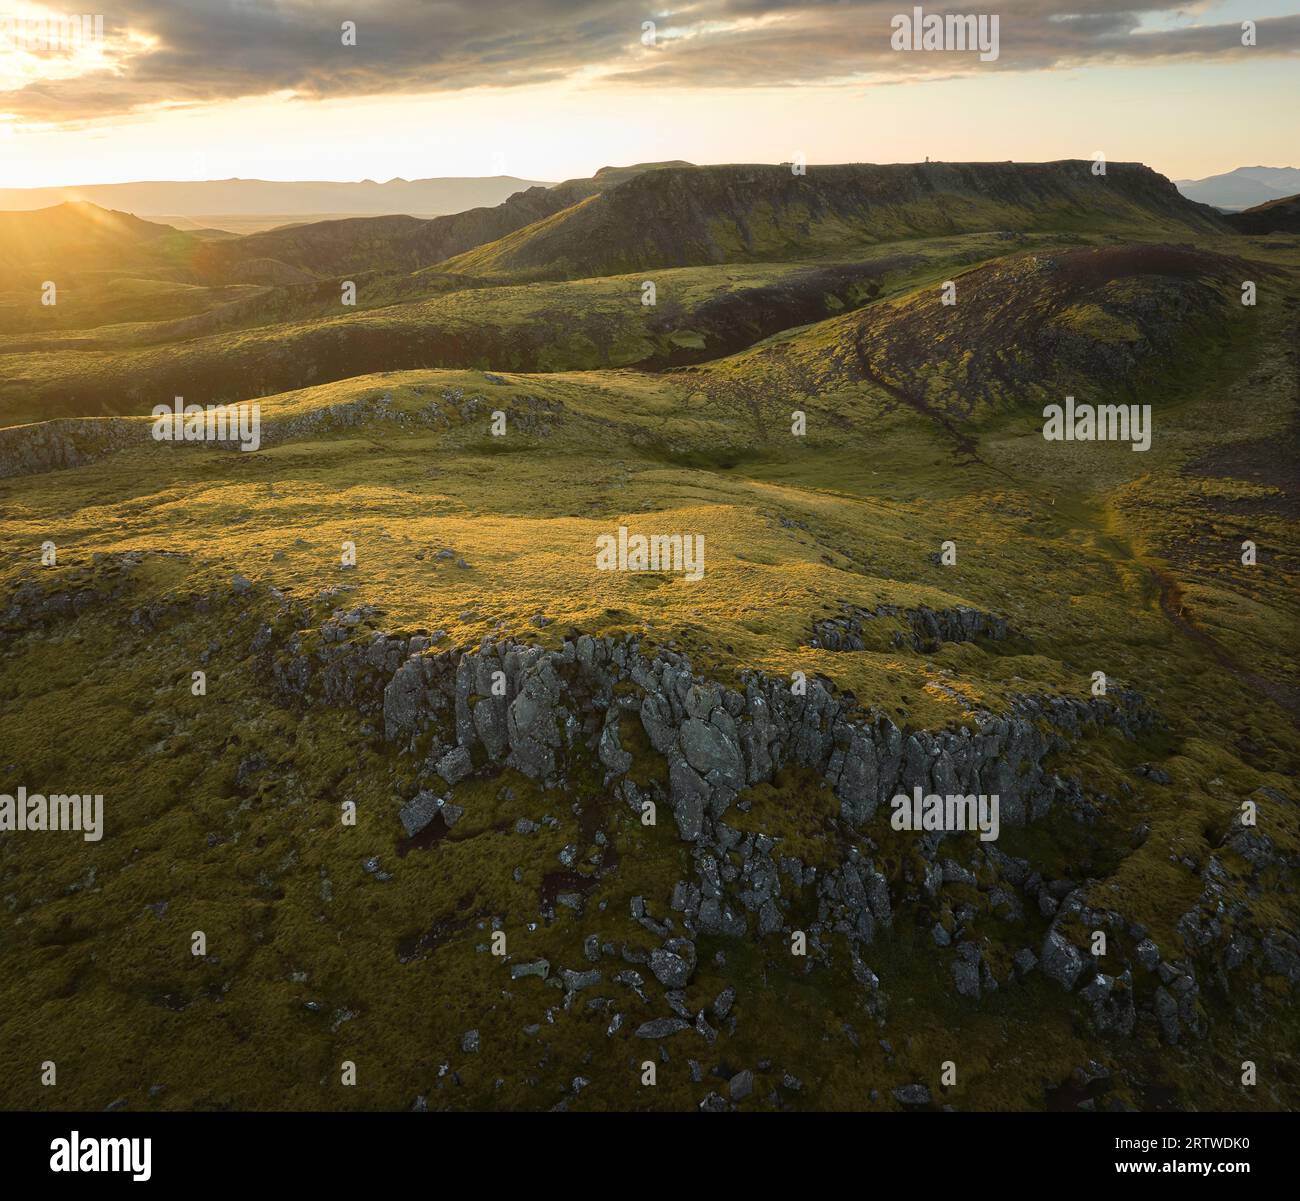 Fantastischer Blick auf die bergige Formation mit trockenem Gras bei Tageslicht Stockfoto